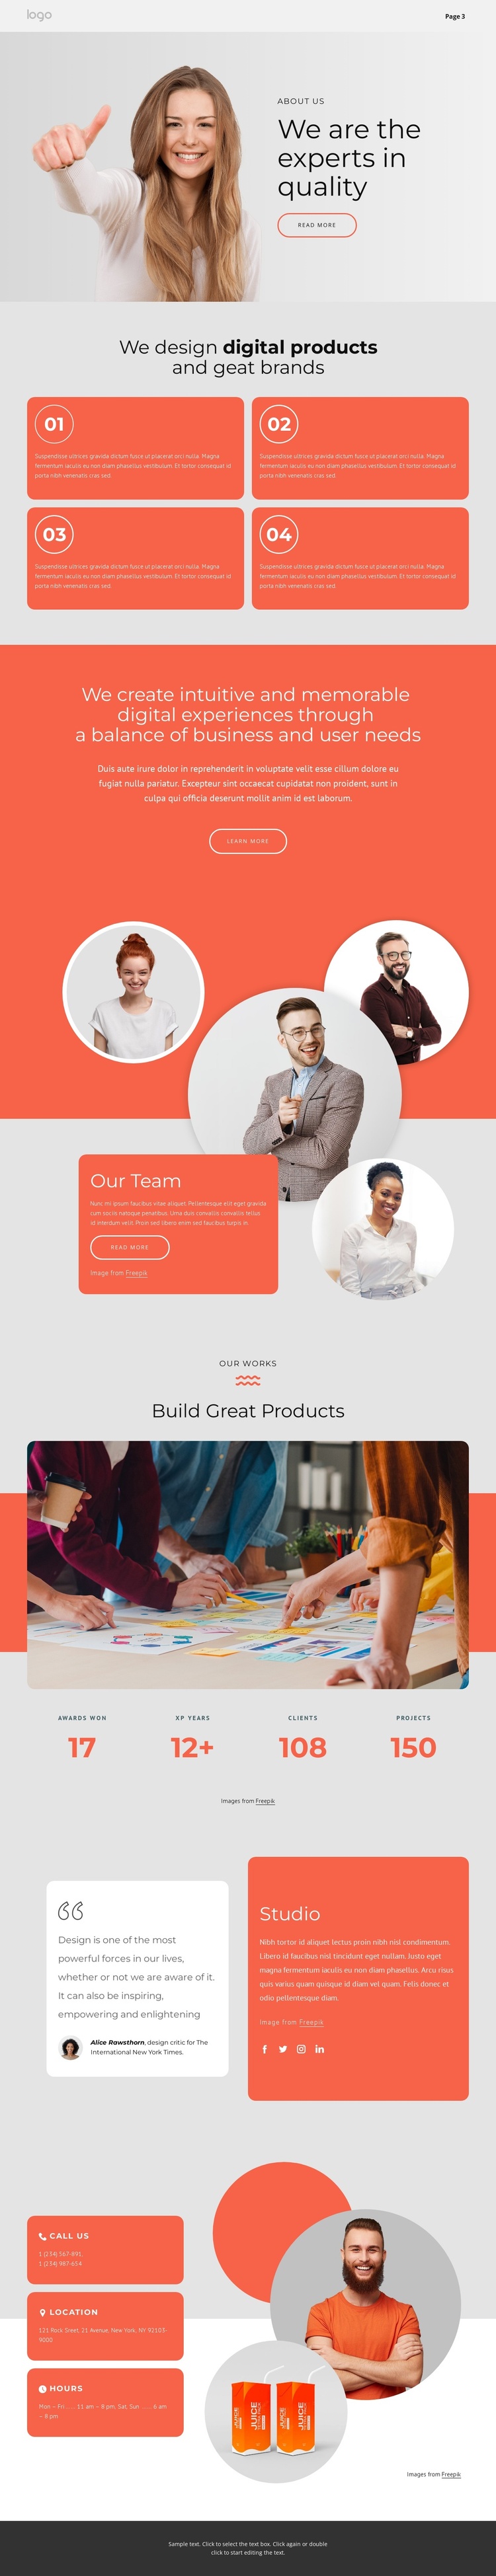 We design great brands Joomla Template